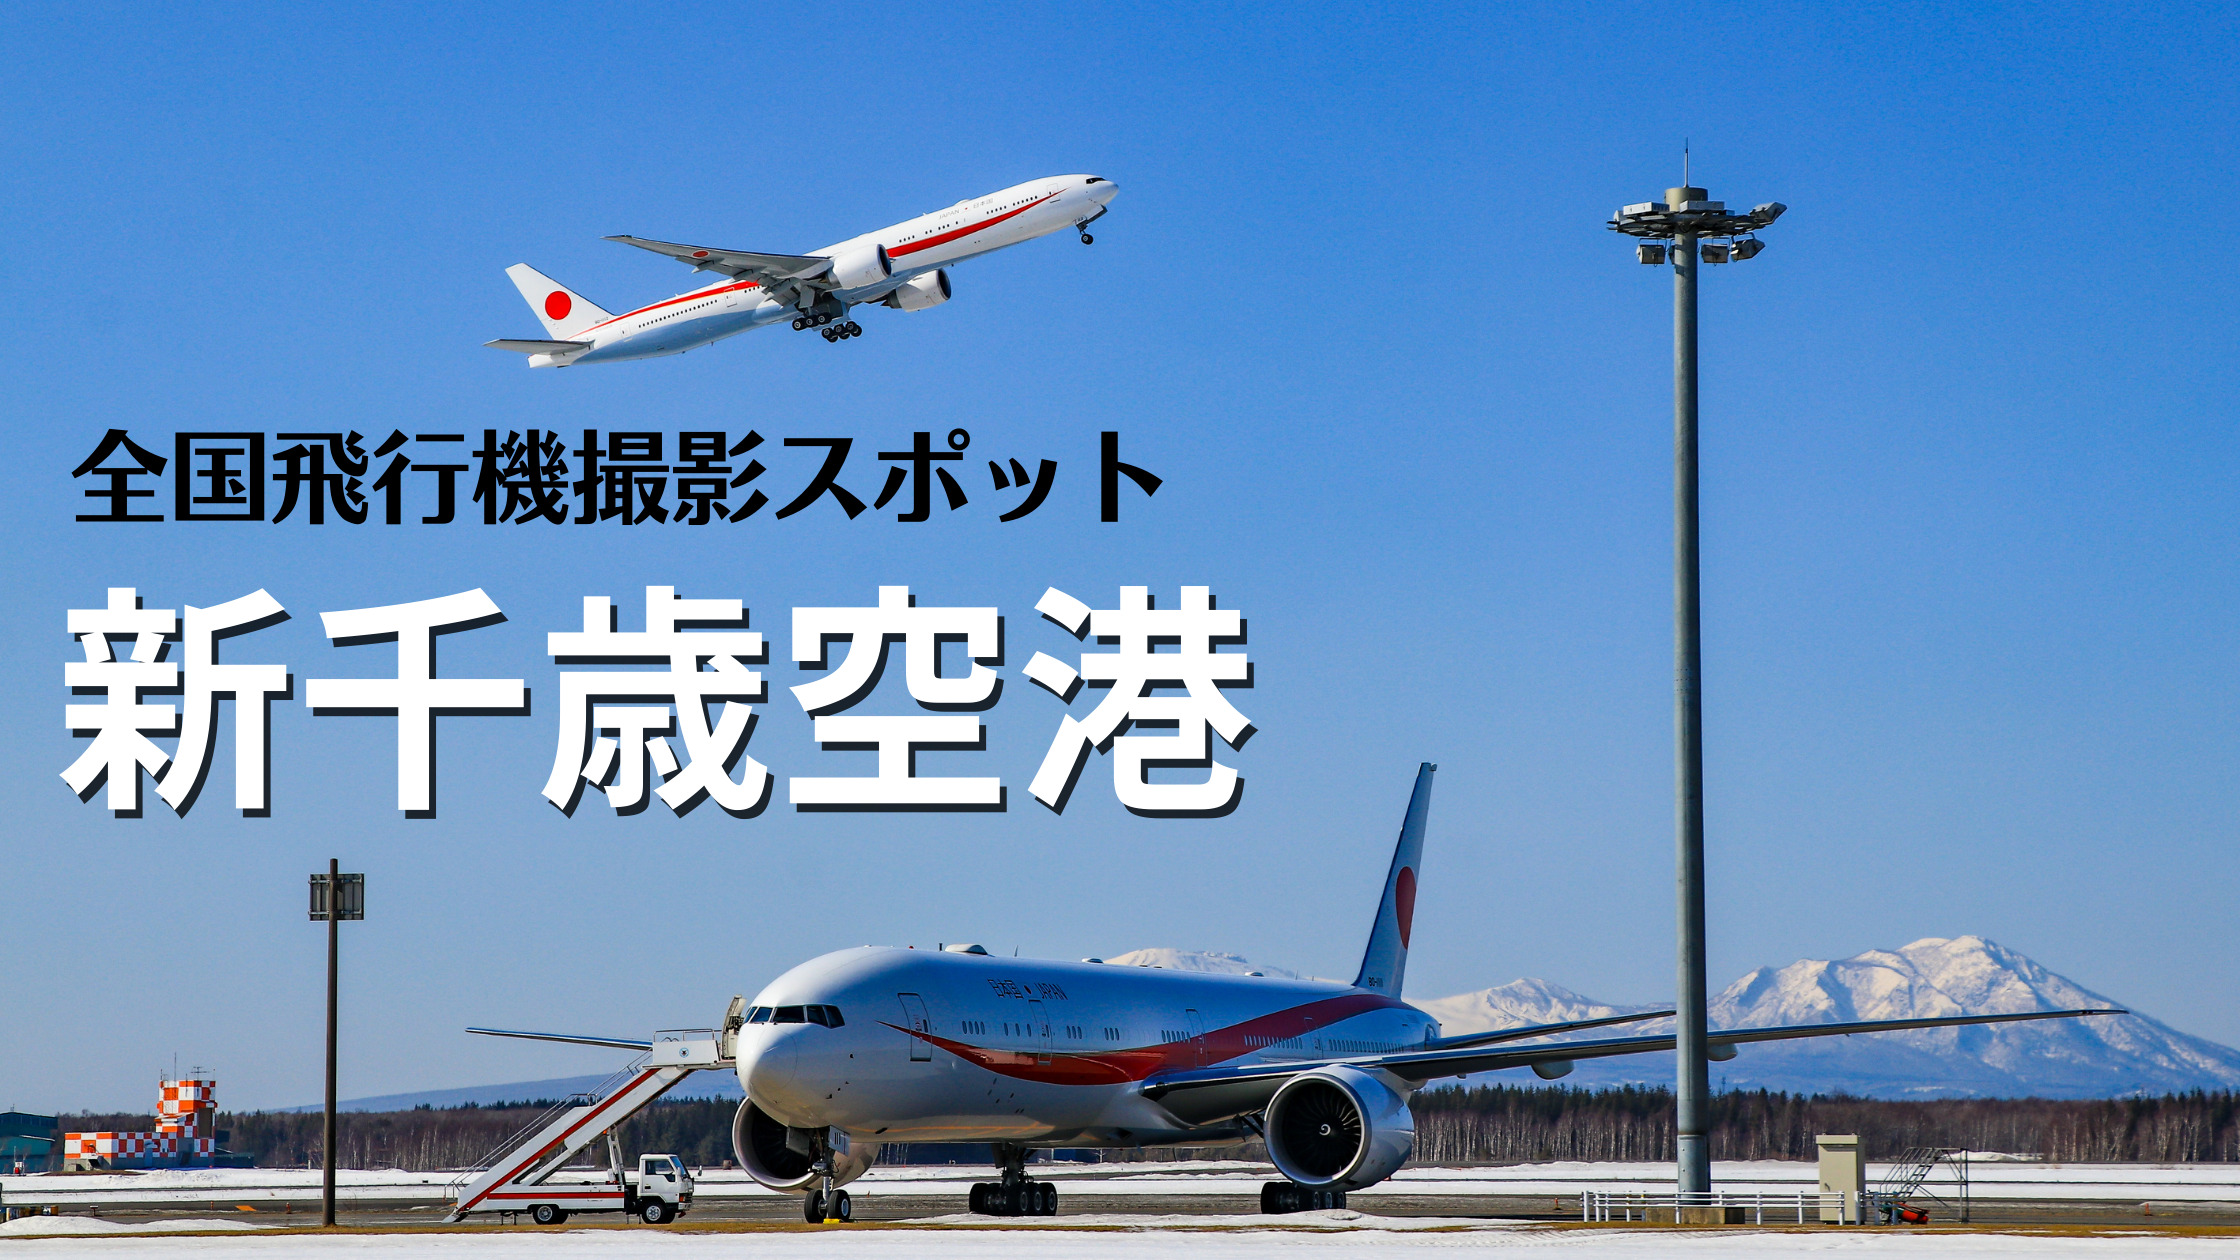 北海道 新千歳空港 千歳基地 Cts Rjcc 飛行機写真撮影スポット シテイリョウコウ